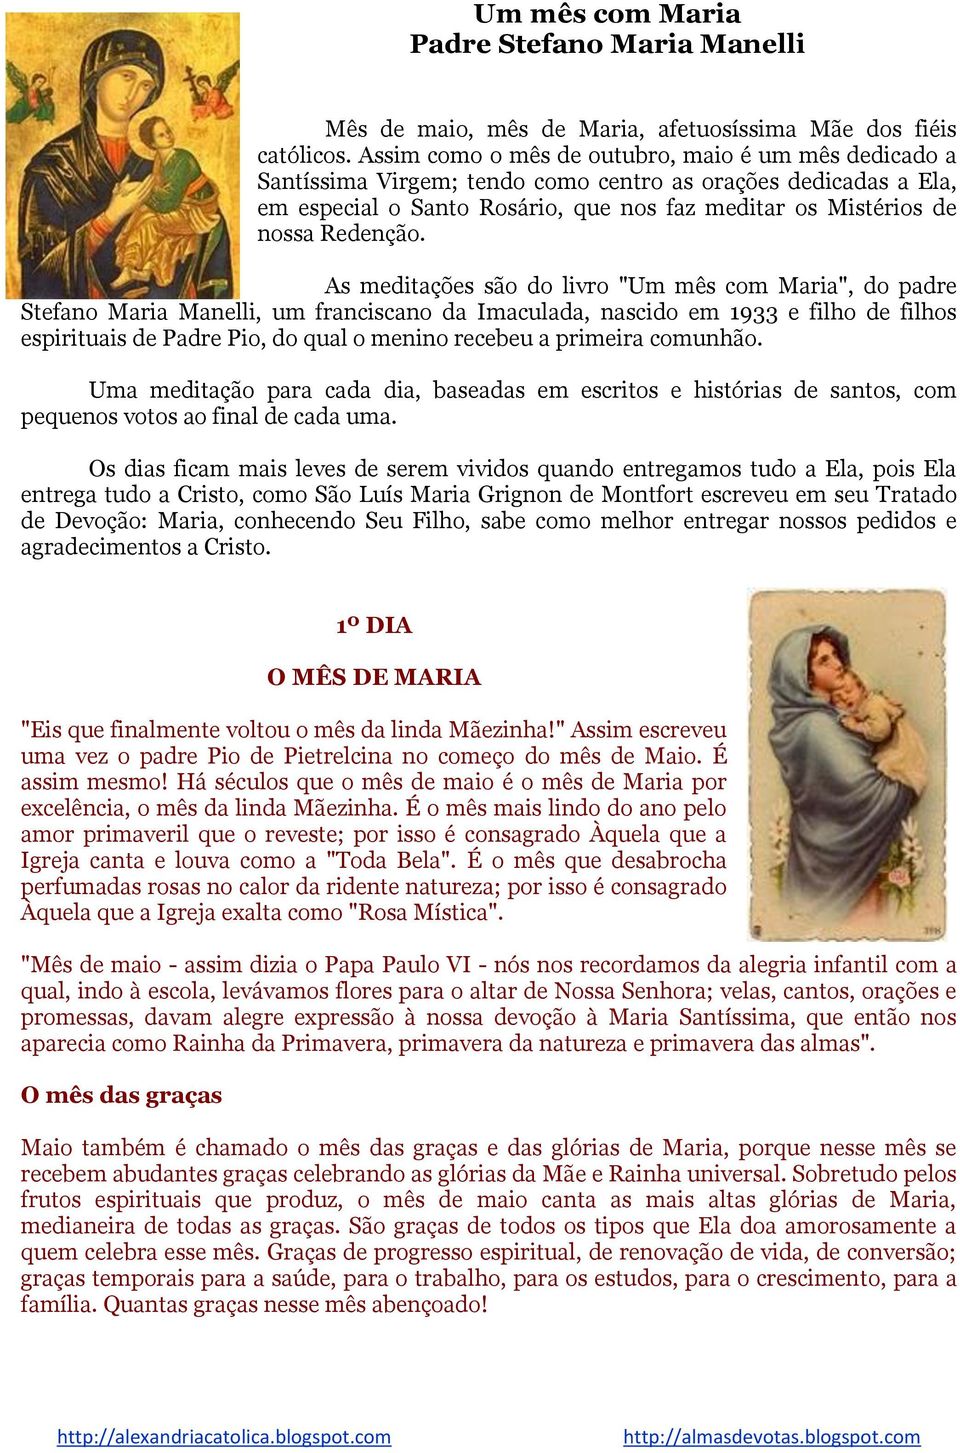 As meditações são do livro "Um mês com Maria", do padre Stefano Maria Manelli, um franciscano da Imaculada, nascido em 1933 e filho de filhos espirituais de Padre Pio, do qual o menino recebeu a